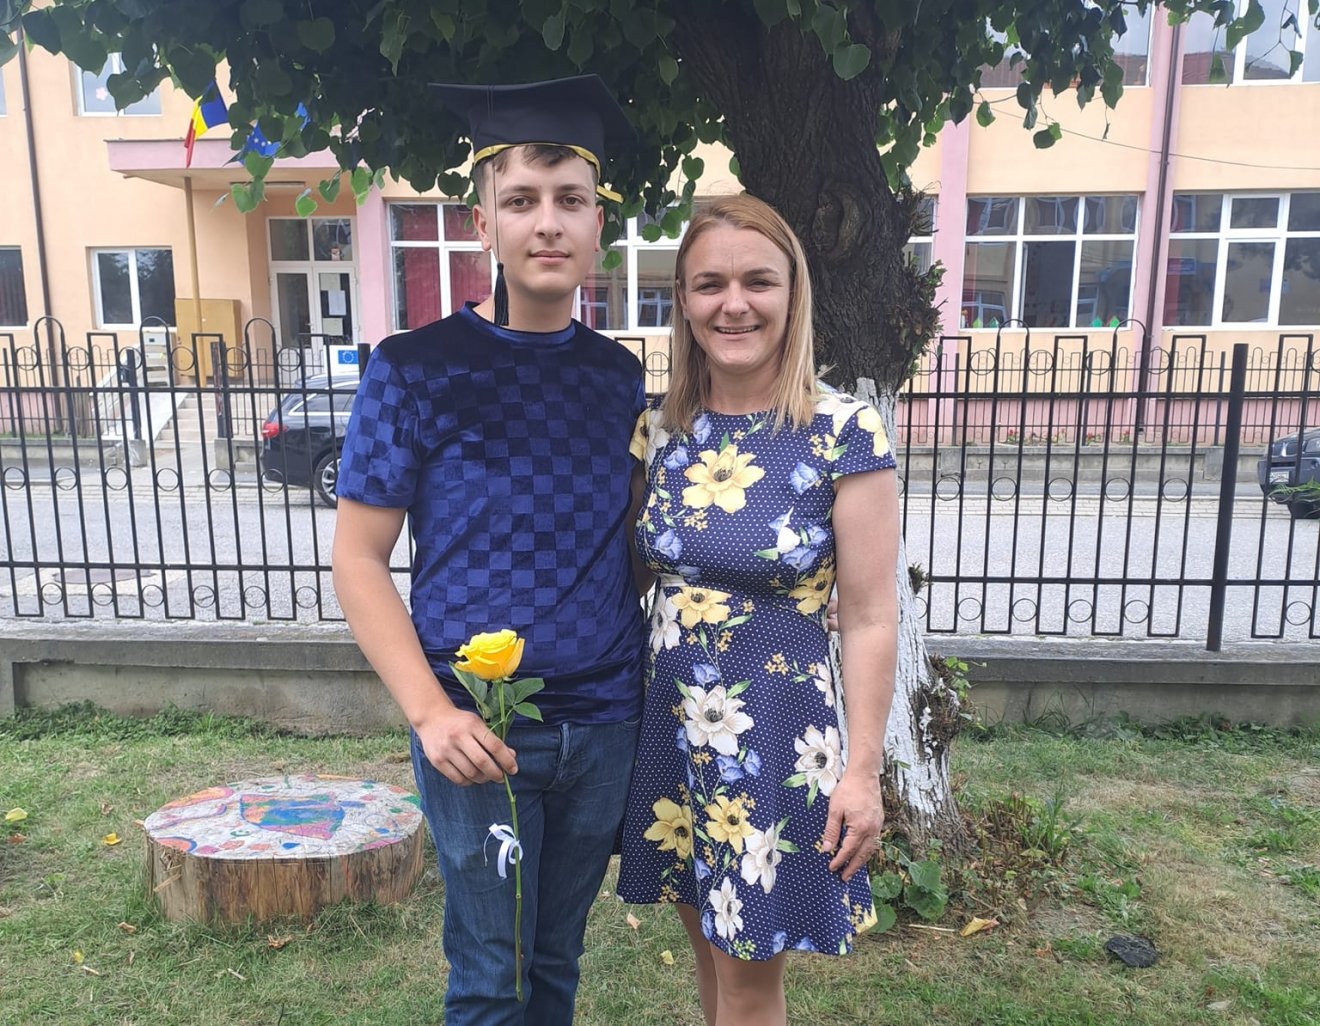 Most először fejezte be középiskolai tanulmányait roma diák az egyik erdélyi kisvárosban